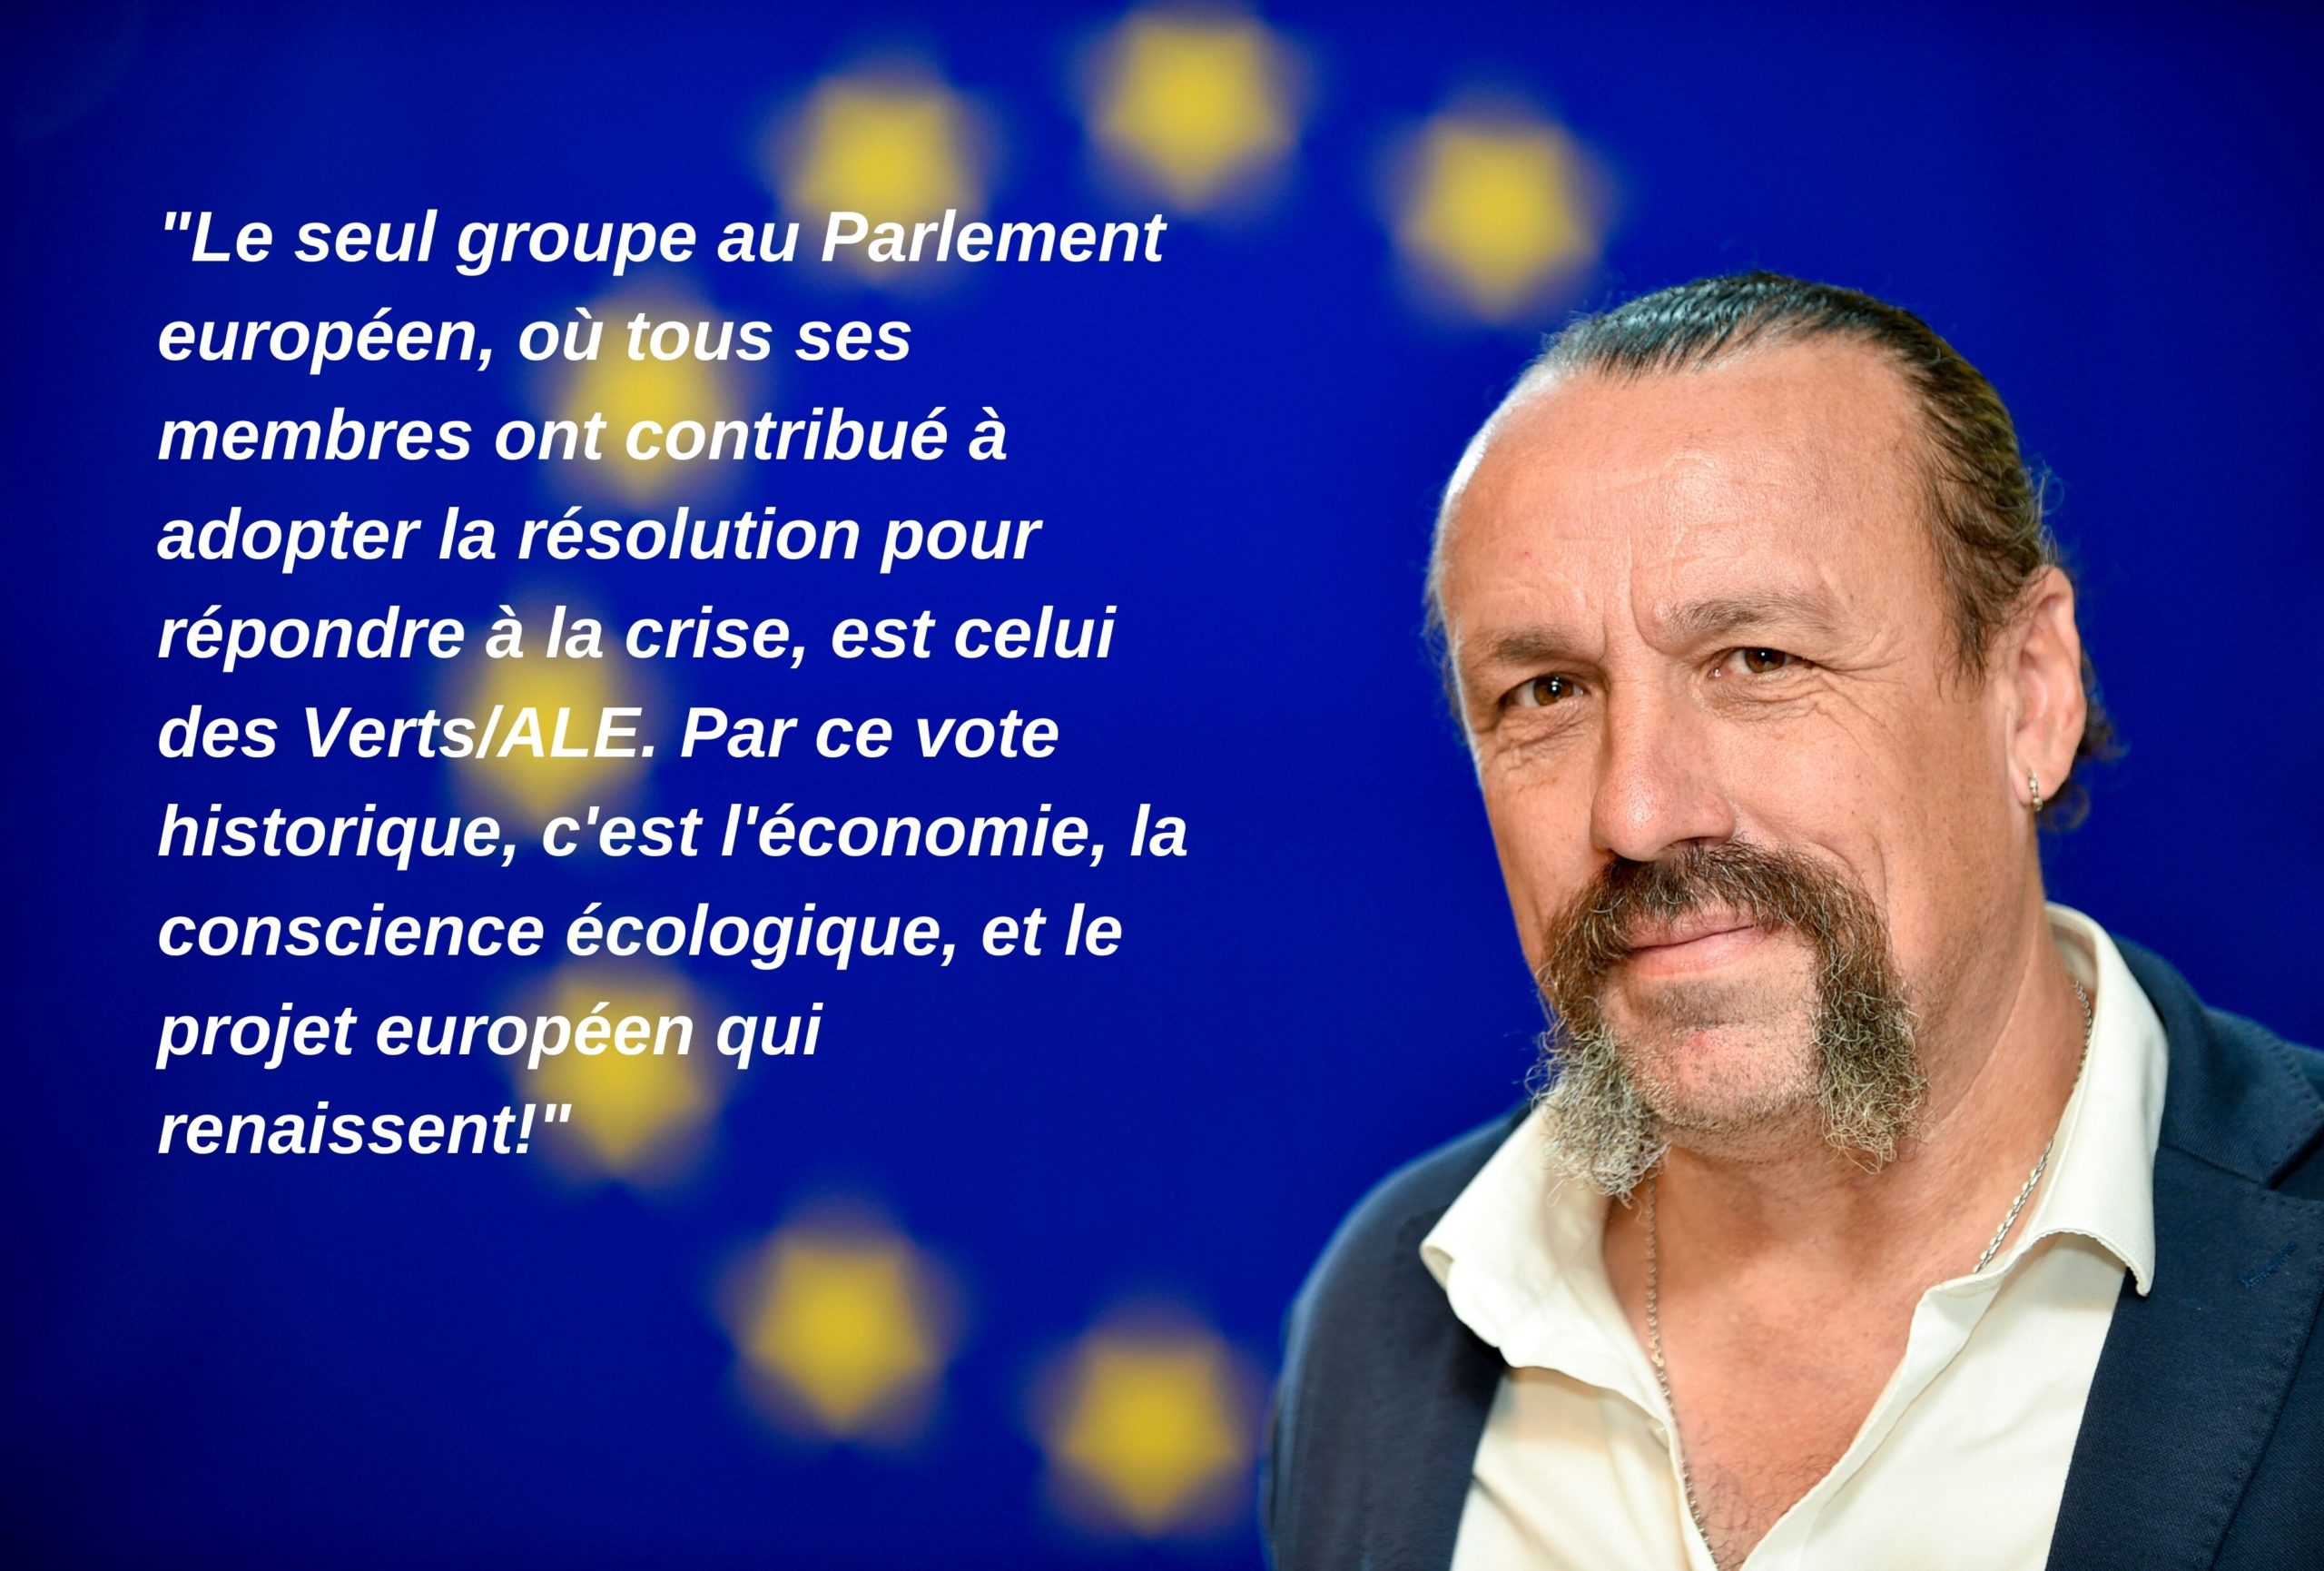 "Le seul groupe au Parlement européen, où tous ses membres ont contribué à adopter la résolution pour répondre à la crise, est celui des Verts/ALE. Par ce vote historique, c'est l'économie, la conscience écologique, et le projet européen qui renaissent!"